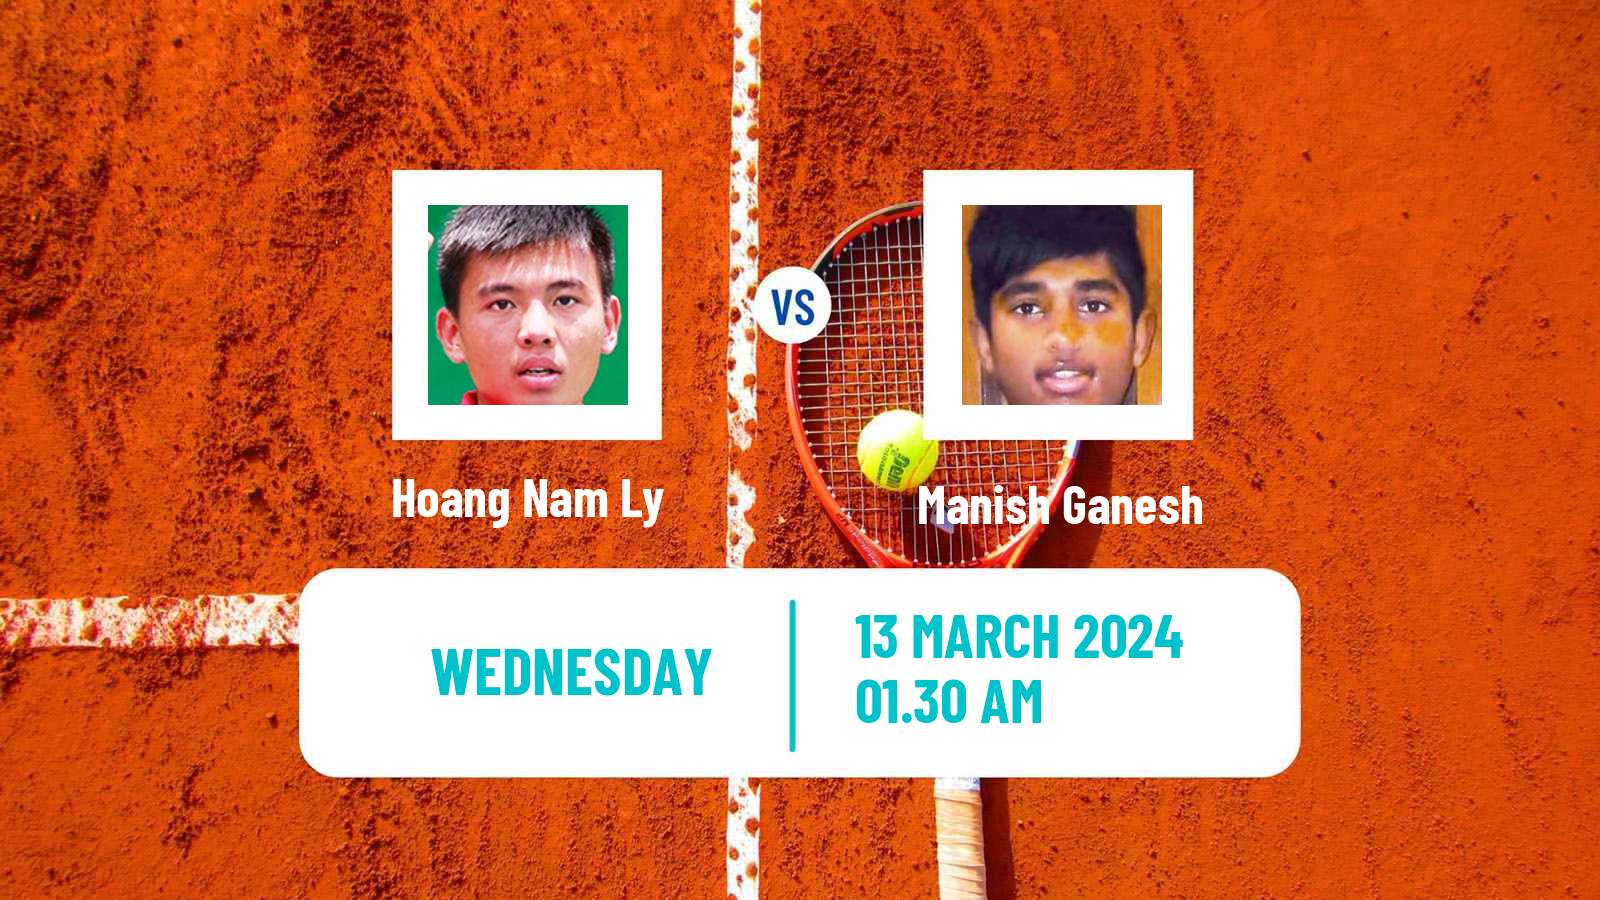 Tennis ITF M25 New Delhi Men Hoang Nam Ly - Manish Ganesh